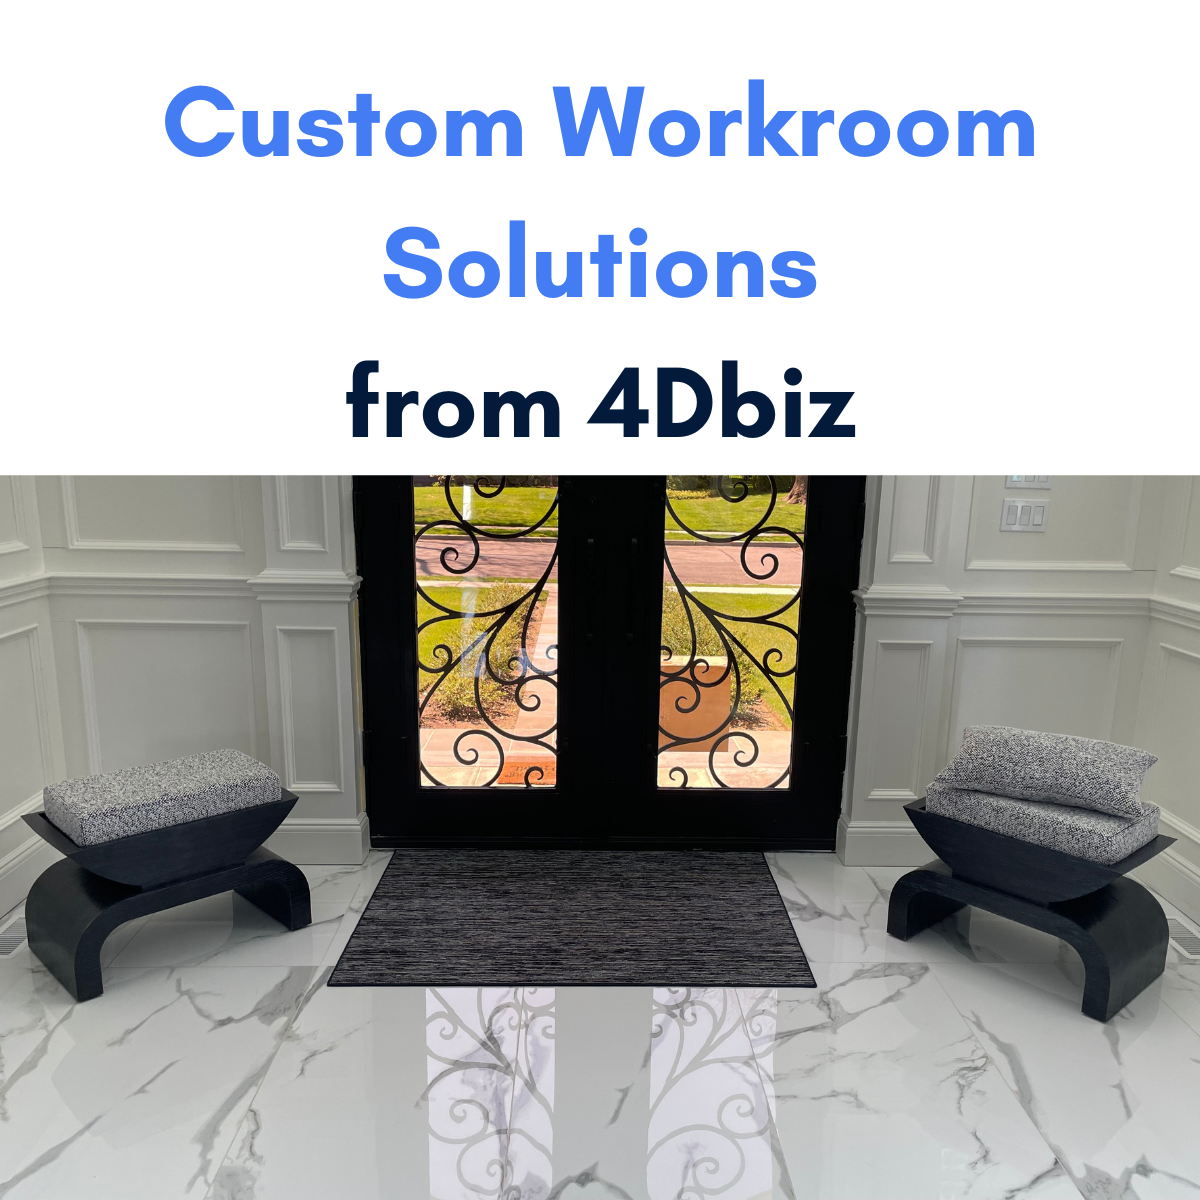 Custom workroom solutions from 4Dbiz